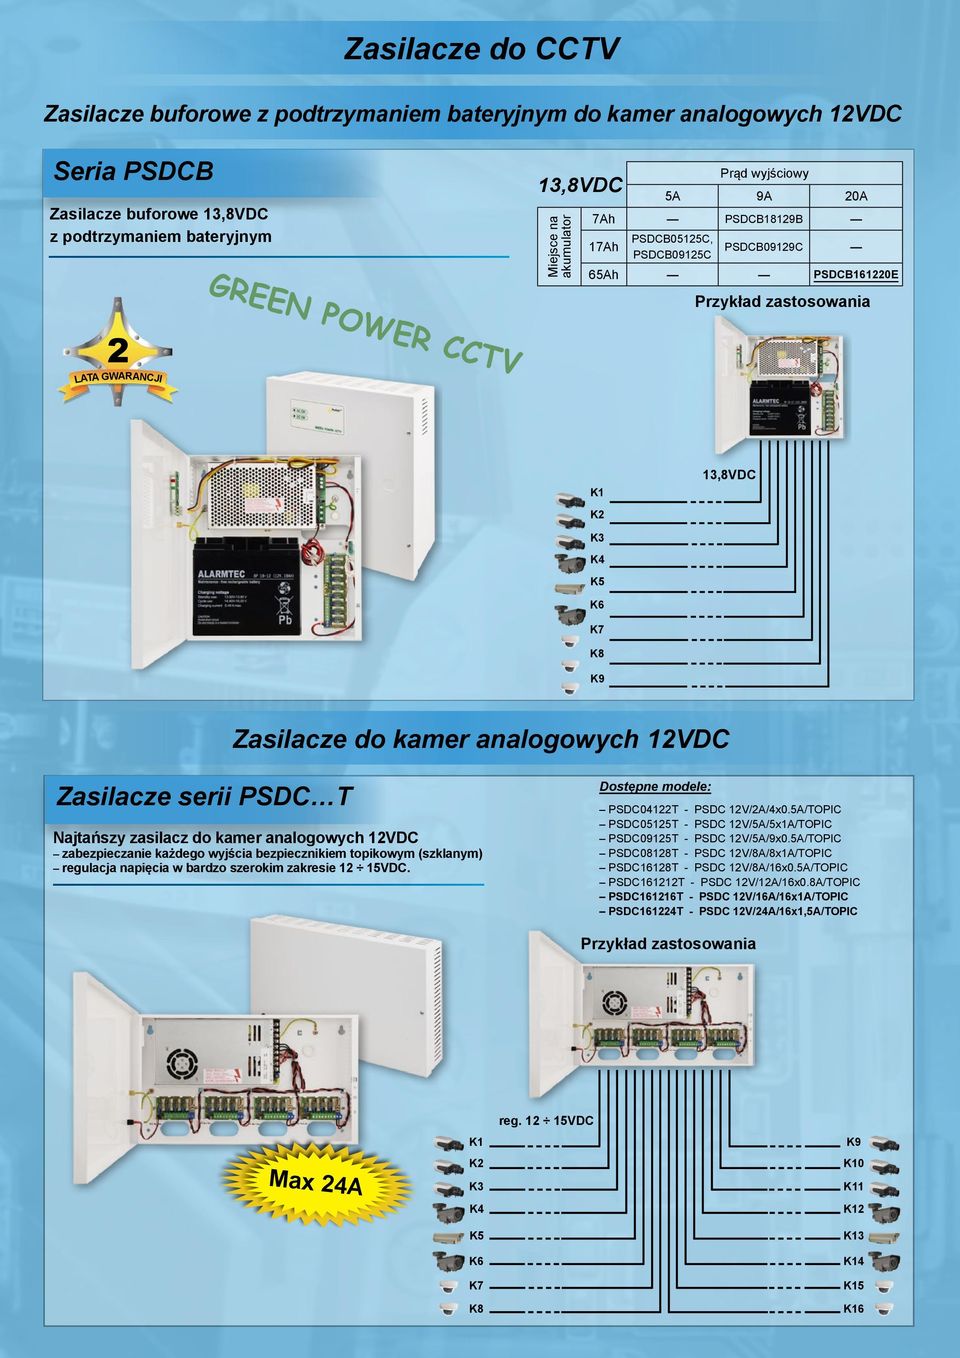 serii PSDC T Najtańszy zasilacz do kamer analogowych 12VDC zabezpieczanie każdego wyjścia bezpiecznikiem topikowym (szklanym) regulacja napięcia w bardzo szerokim zakresie 12 15VDC.